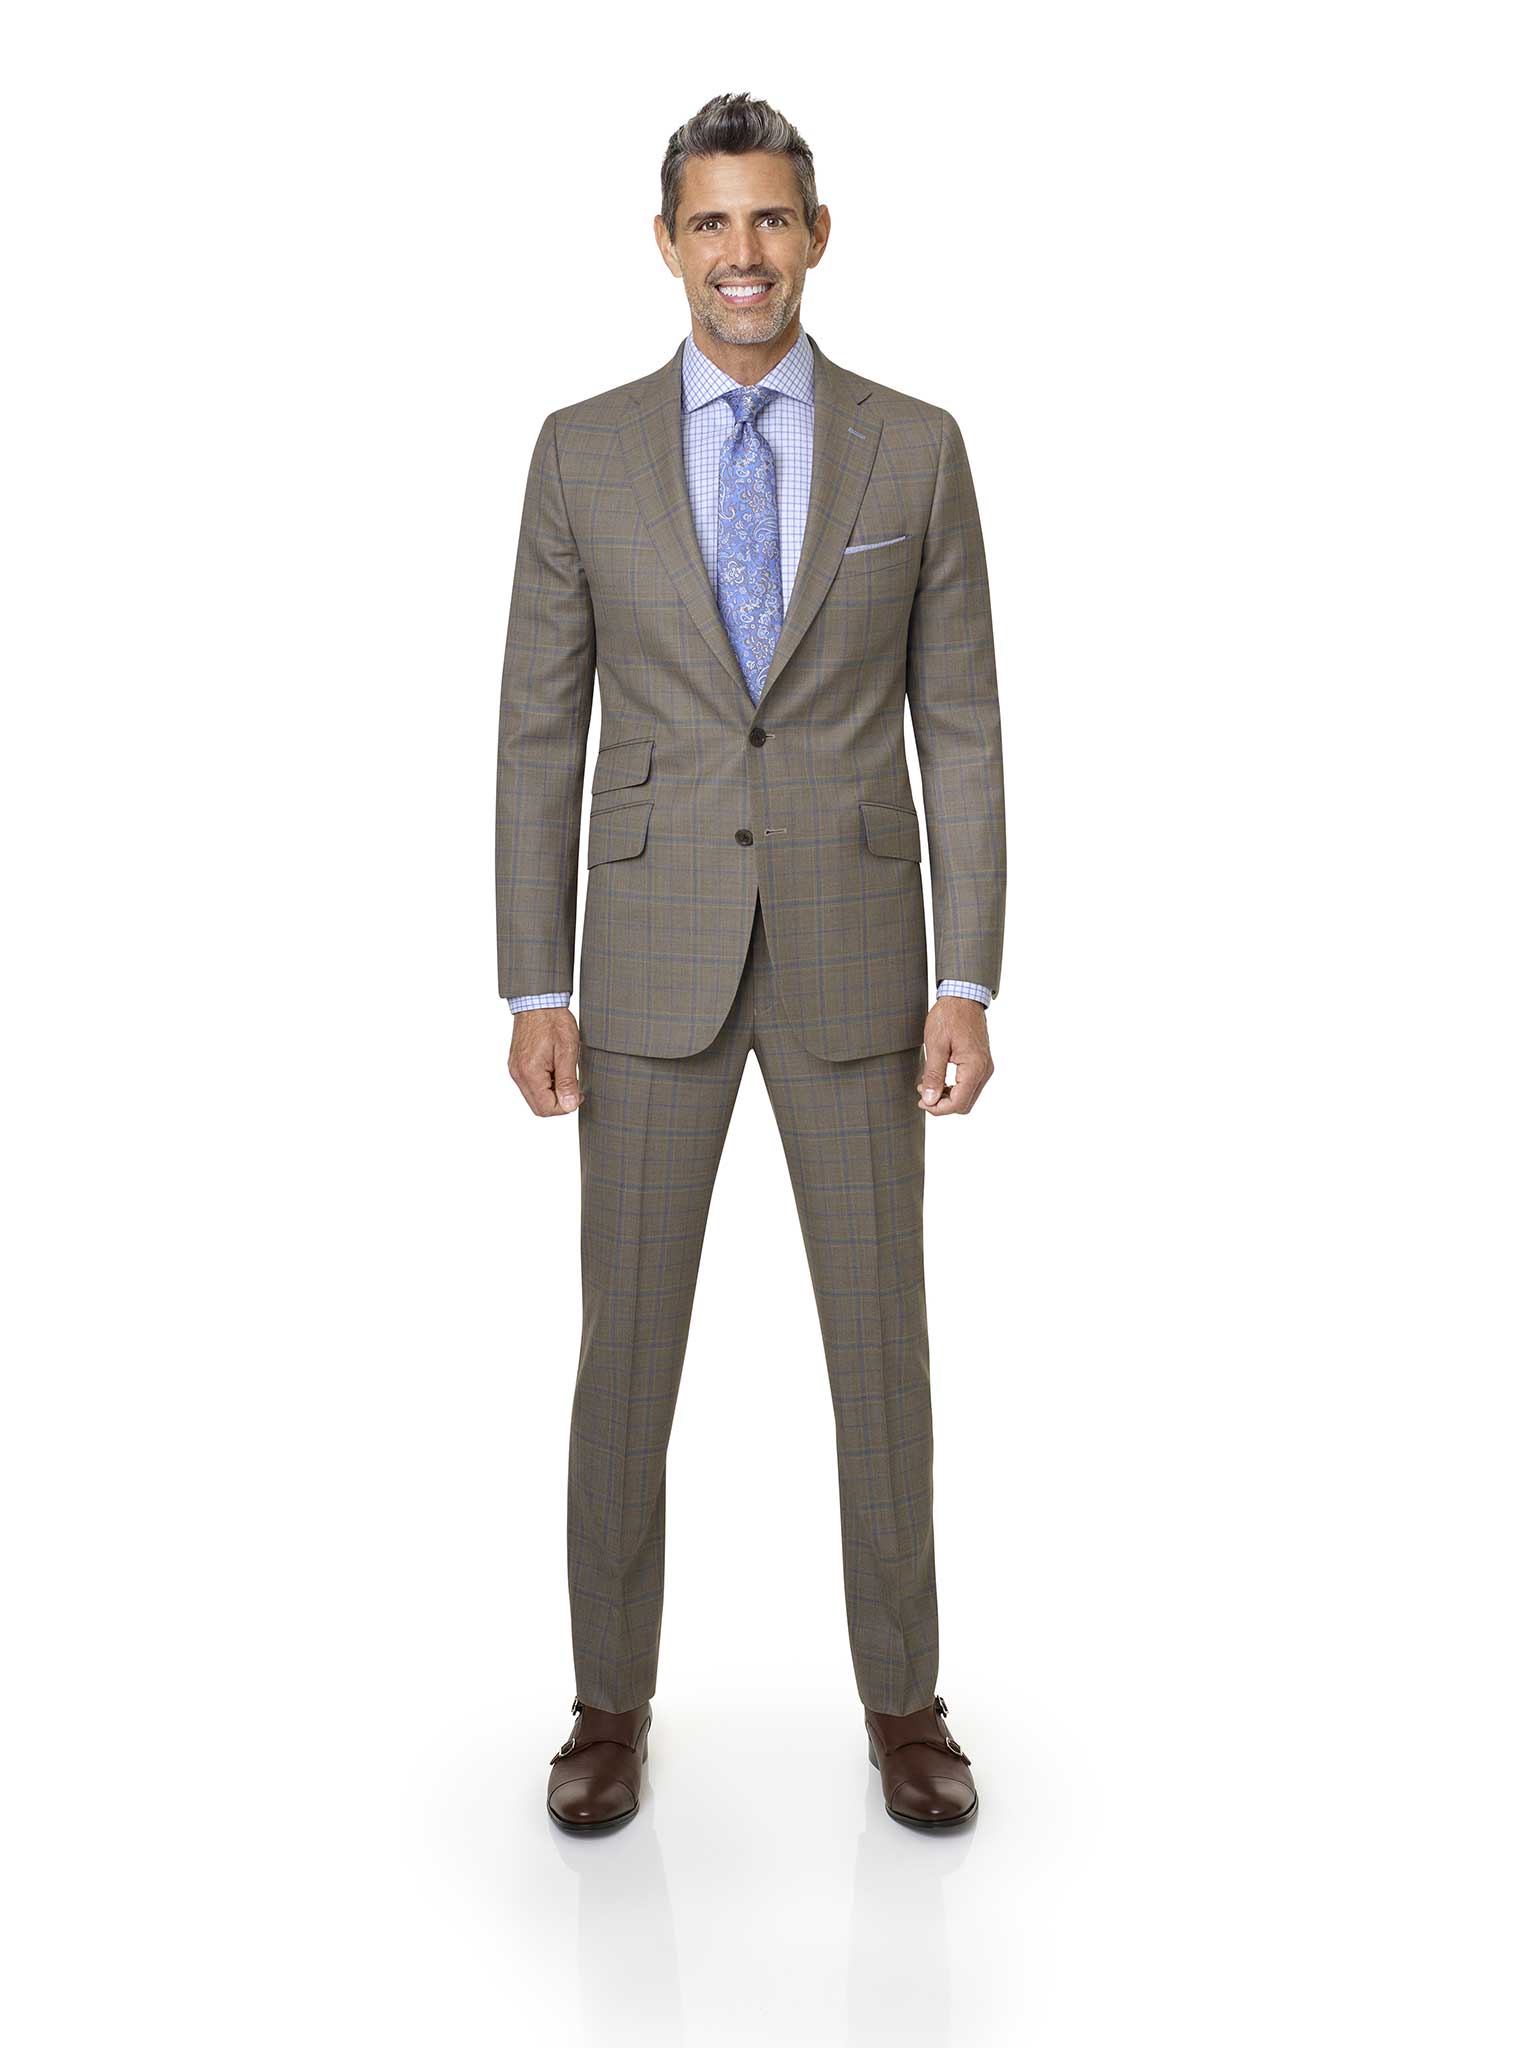 Men's Custom Suits                                                                                                                                                                                                                                        , Tan Plaid Suit